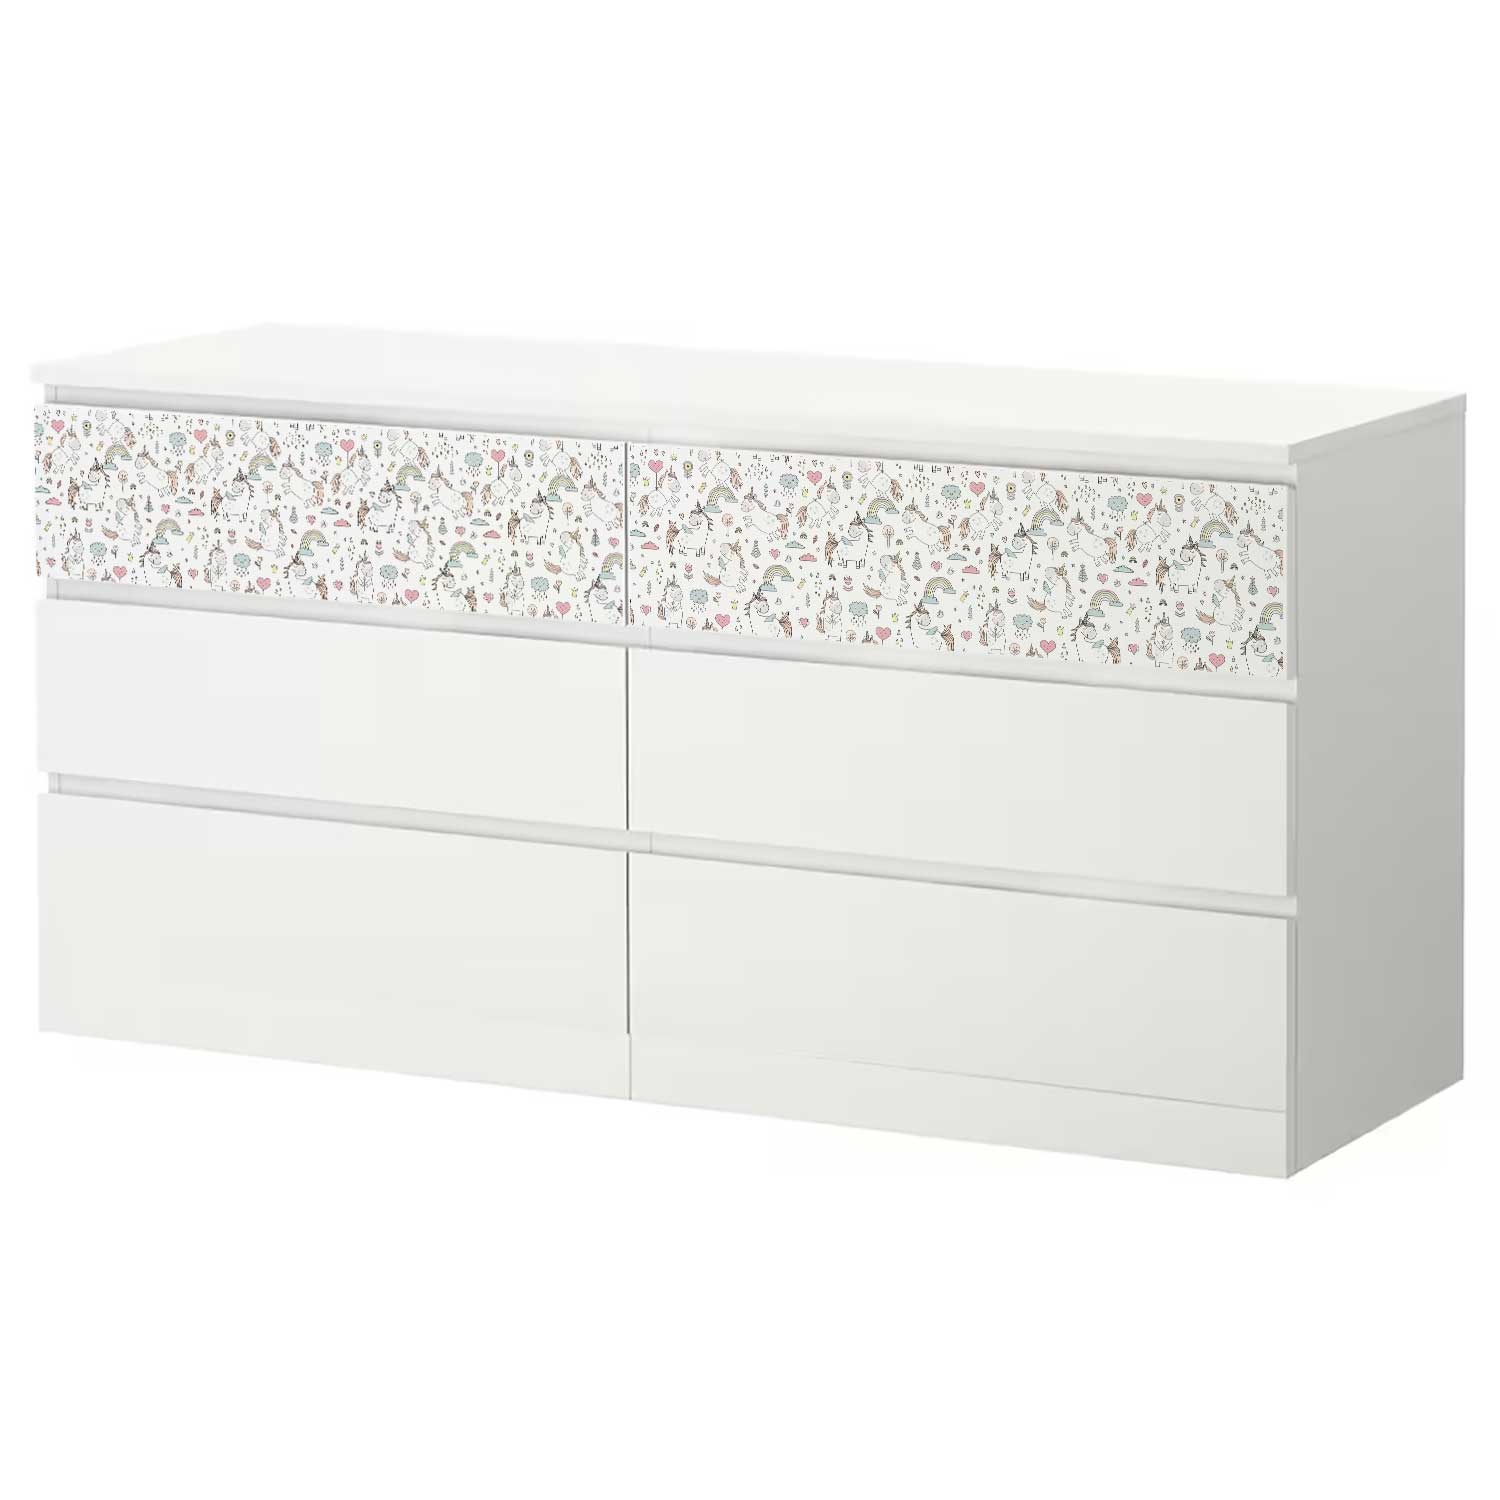 Möbelfolie Kinder für IKEA MALM Kommode 6-Schubladen 160x78 cm 'Einhorn'